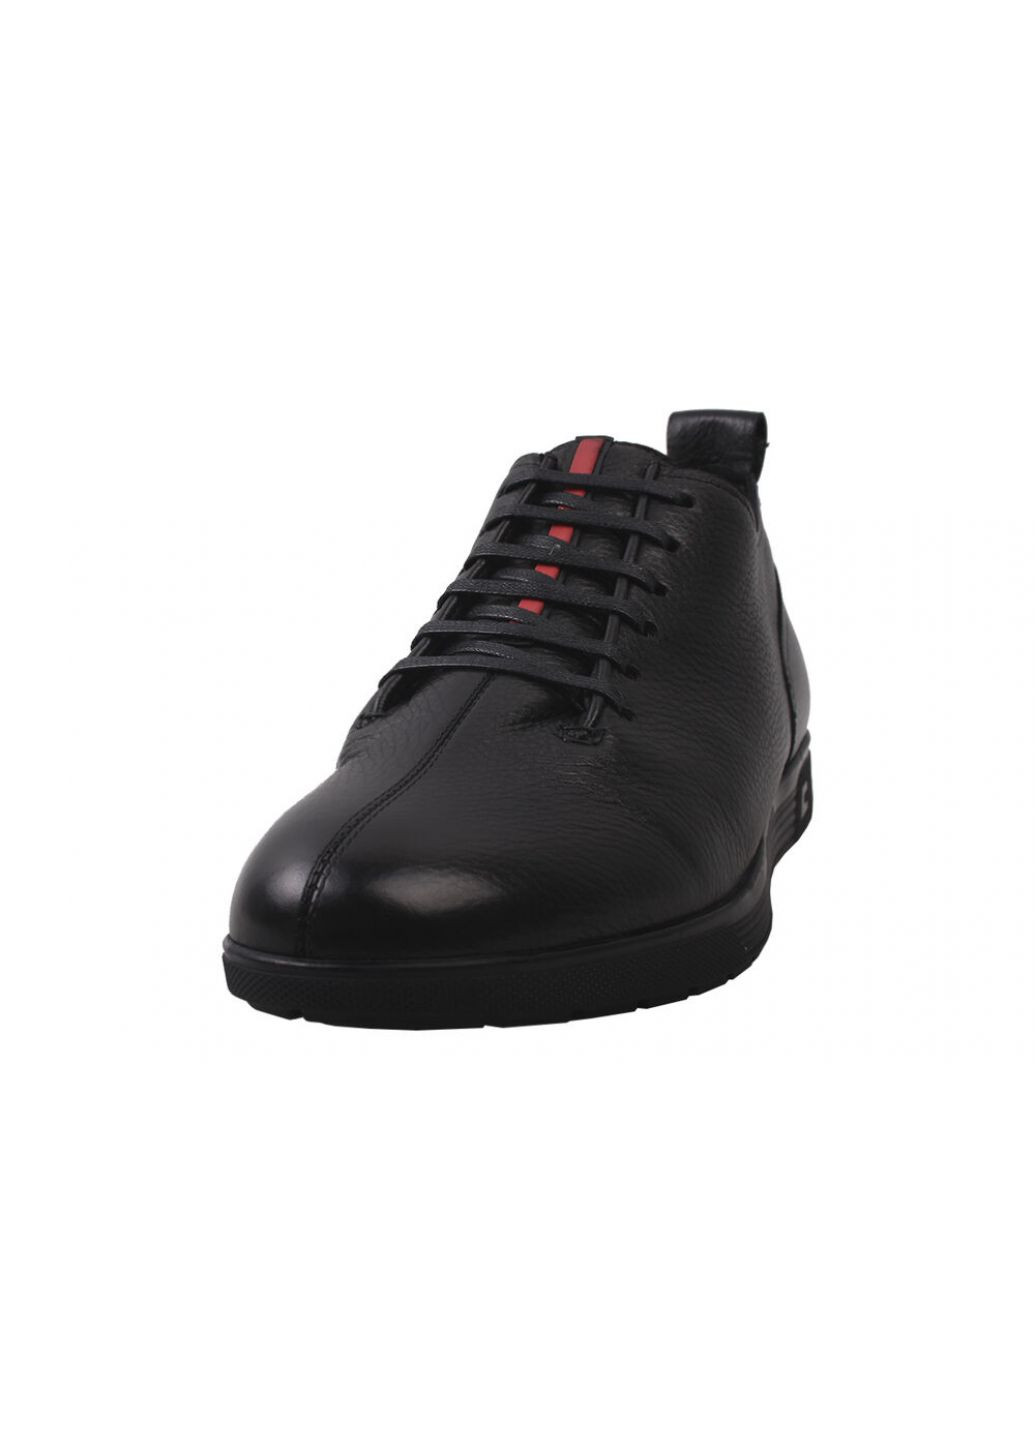 Черные ботинки мужские из натуральной кожи, на низком ходу, на шнуровке, черные, Brooman